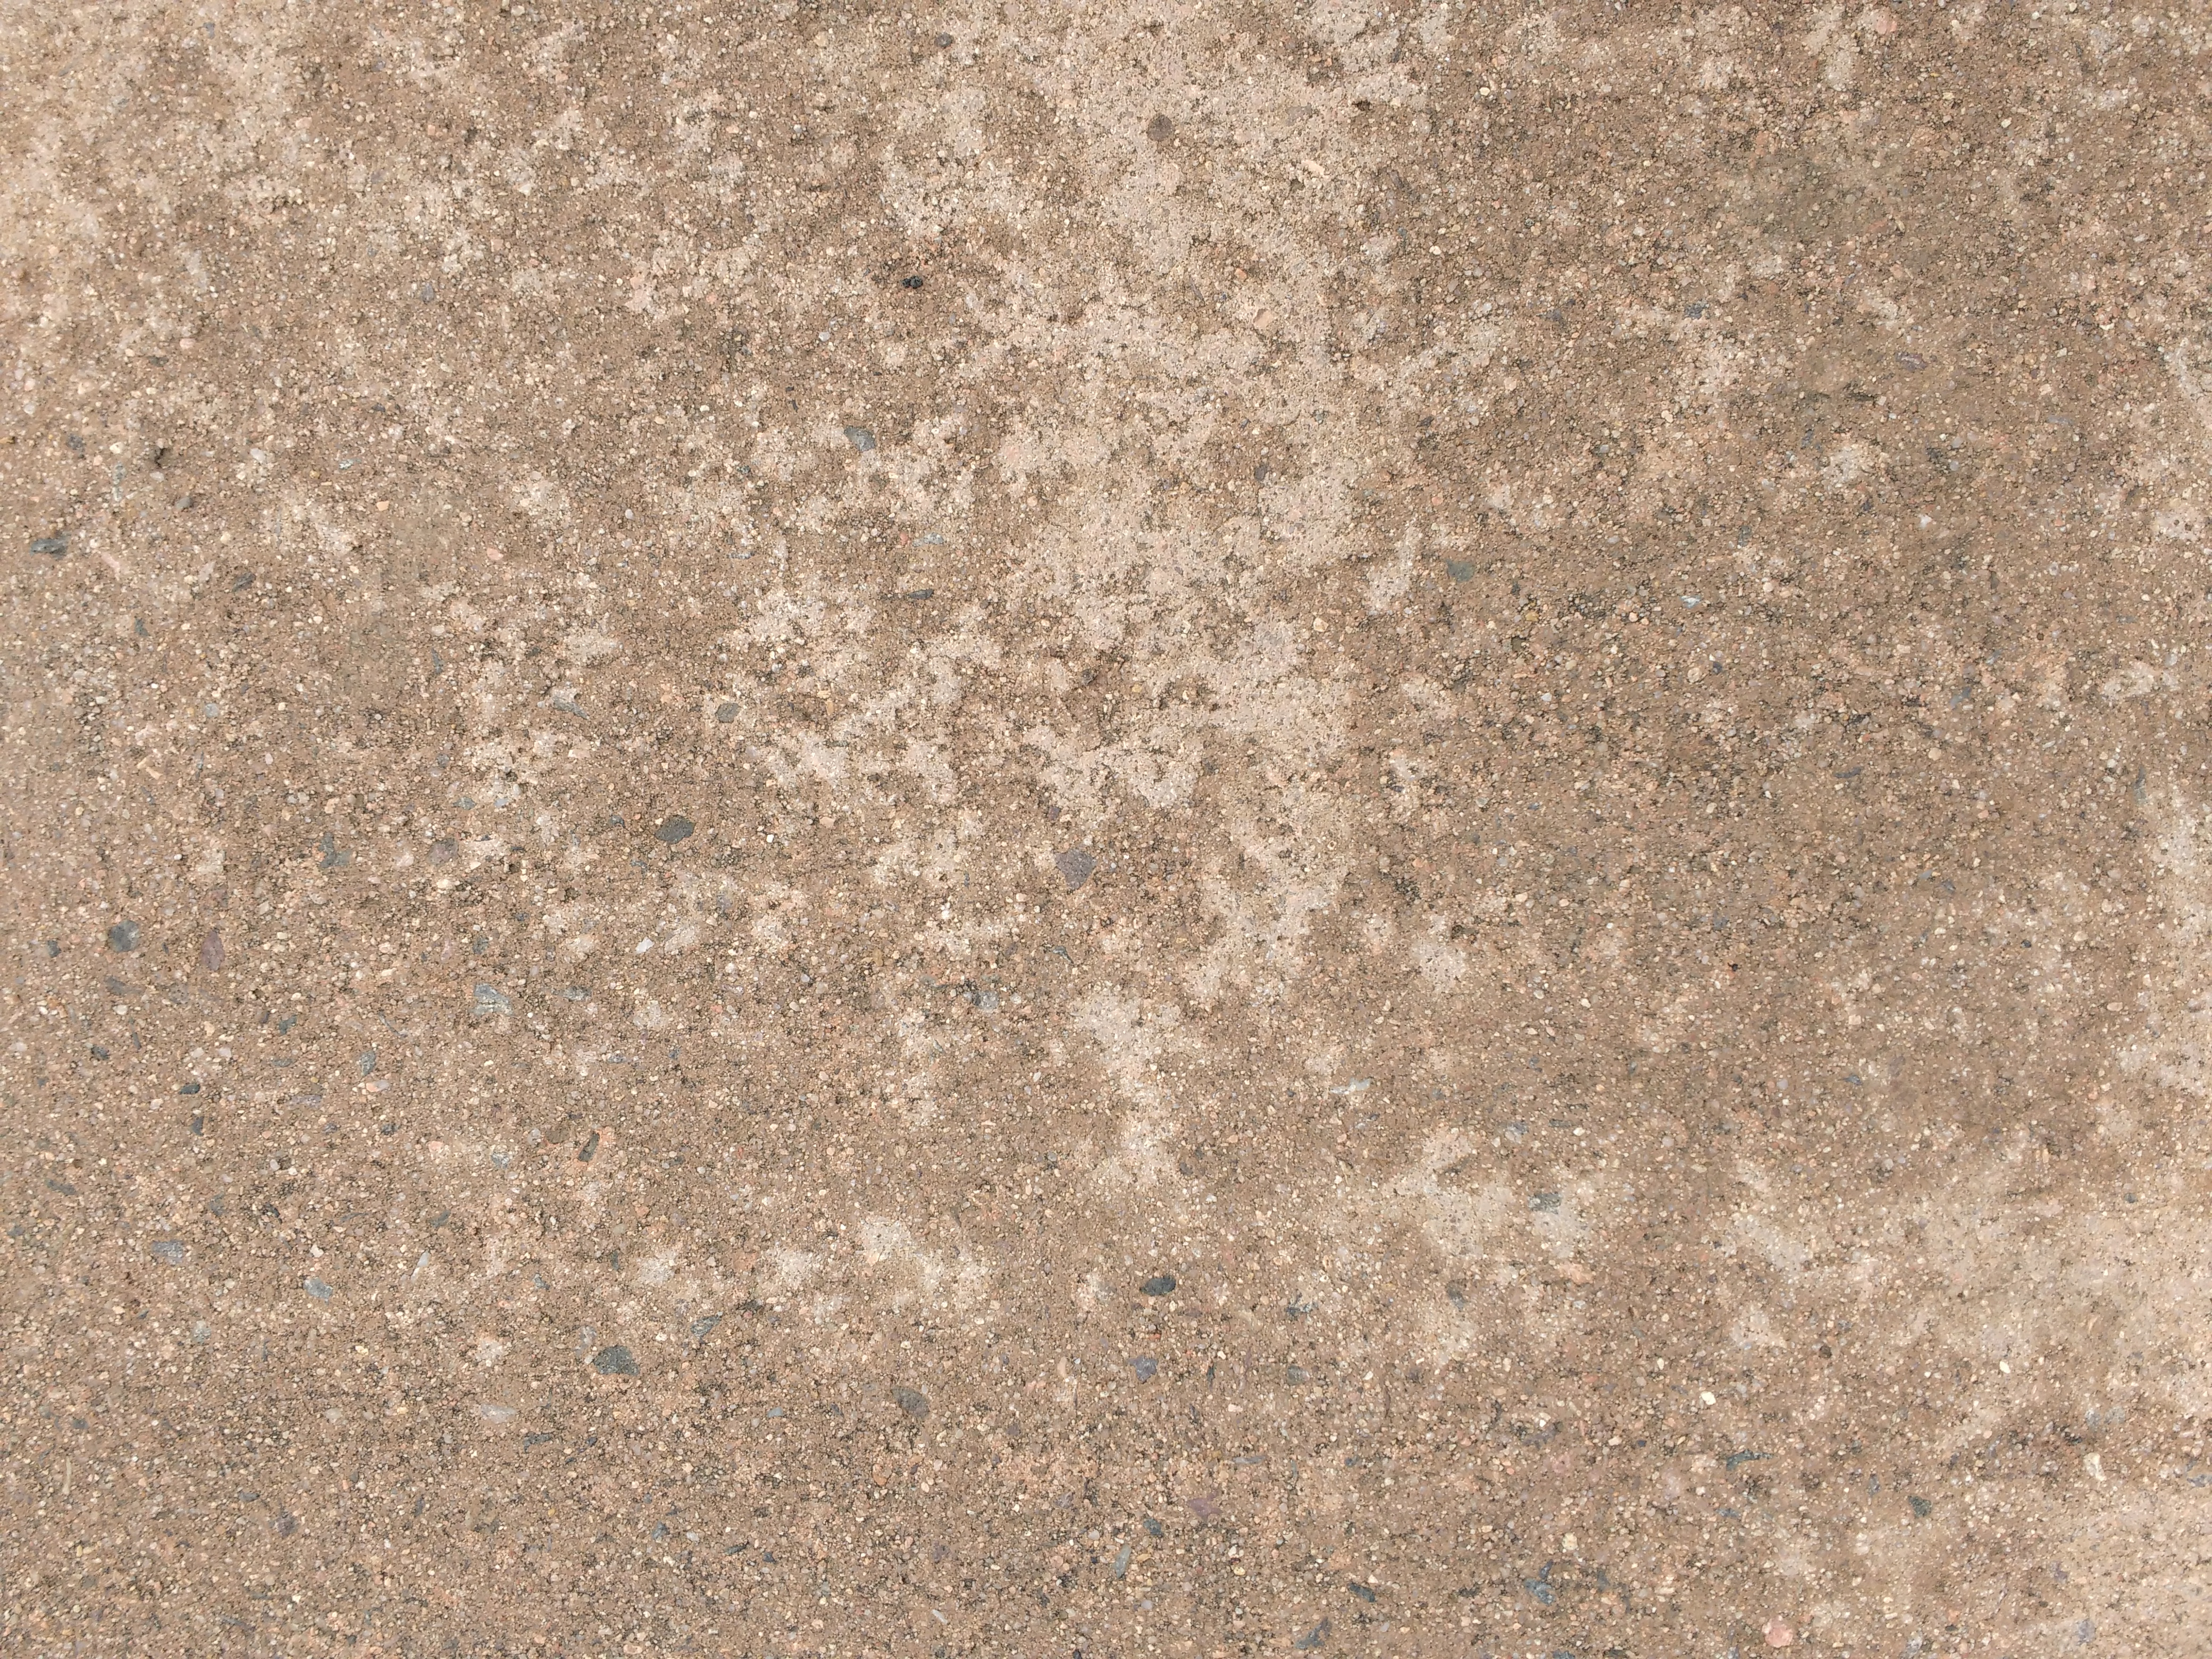 Damp Sidewalk Cement Texture Picture | Free Photograph | Photos Public